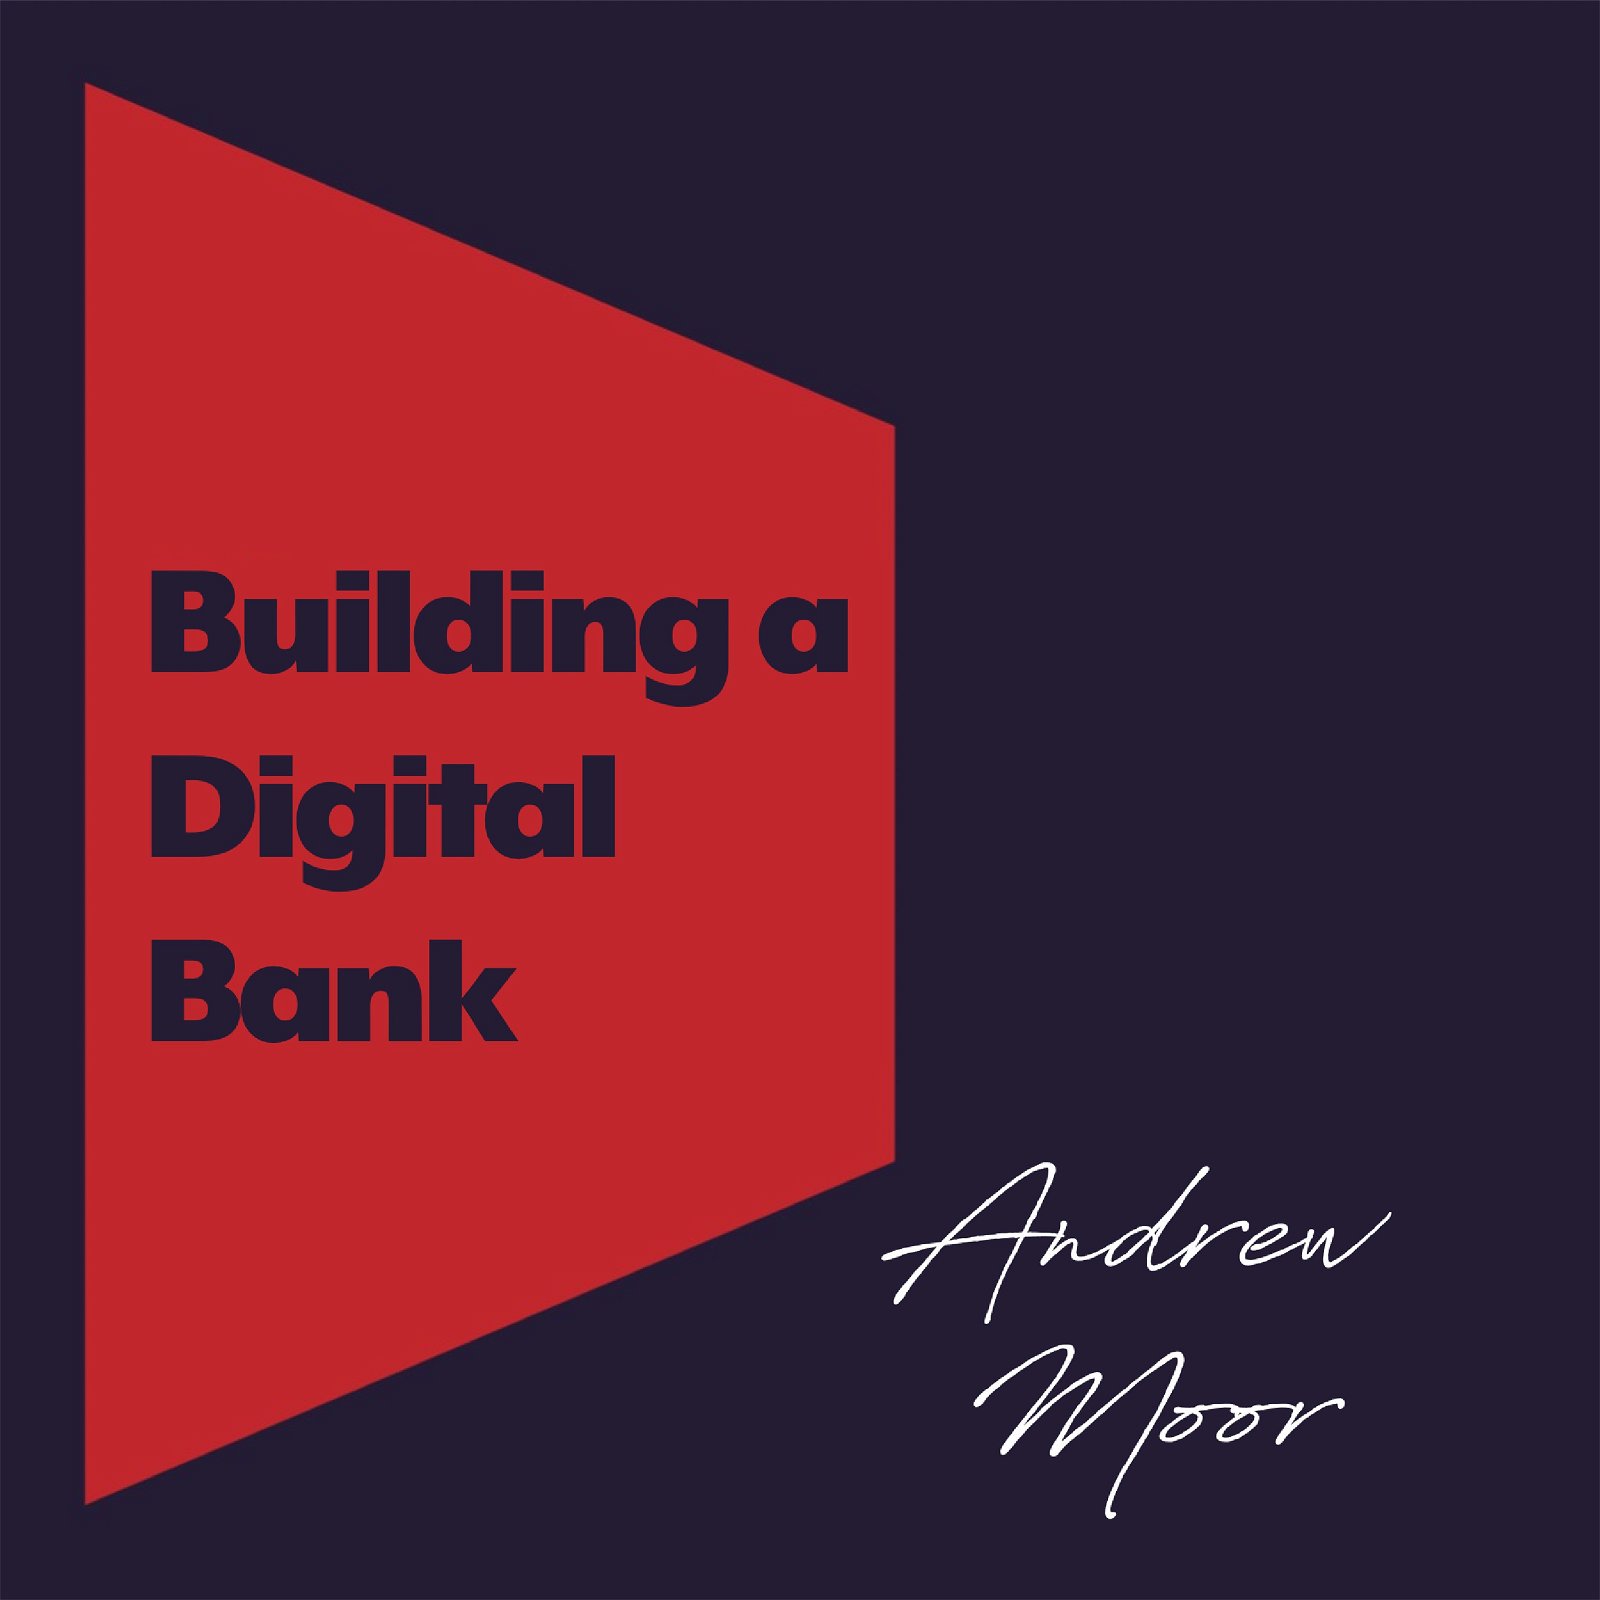 Building a Digital Bank